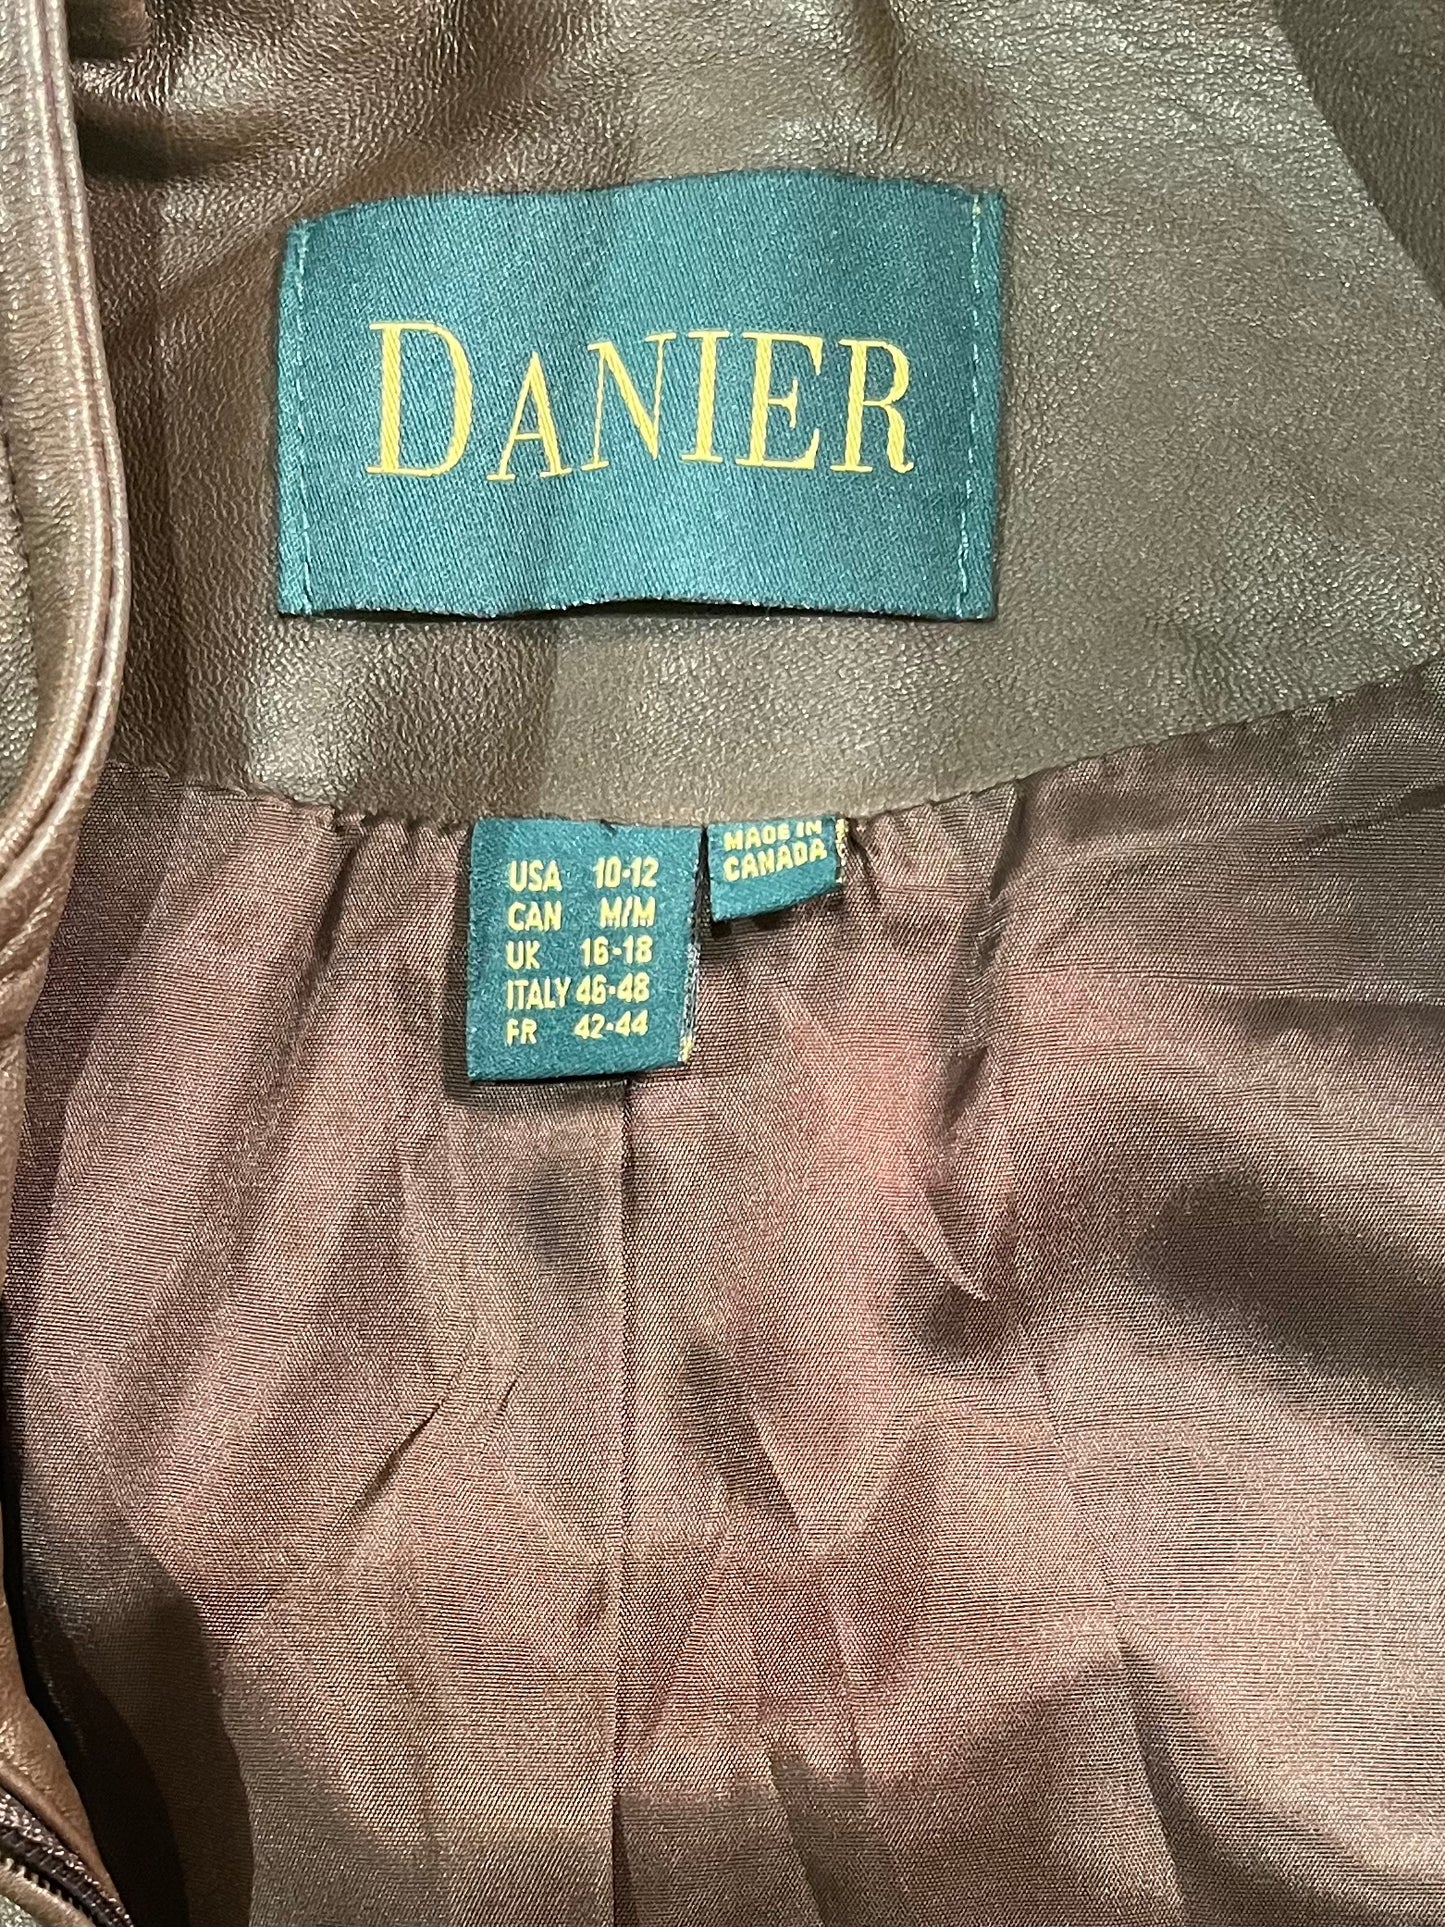 90s 'Danier' Brown Leather Zip Up Jacket / Medium